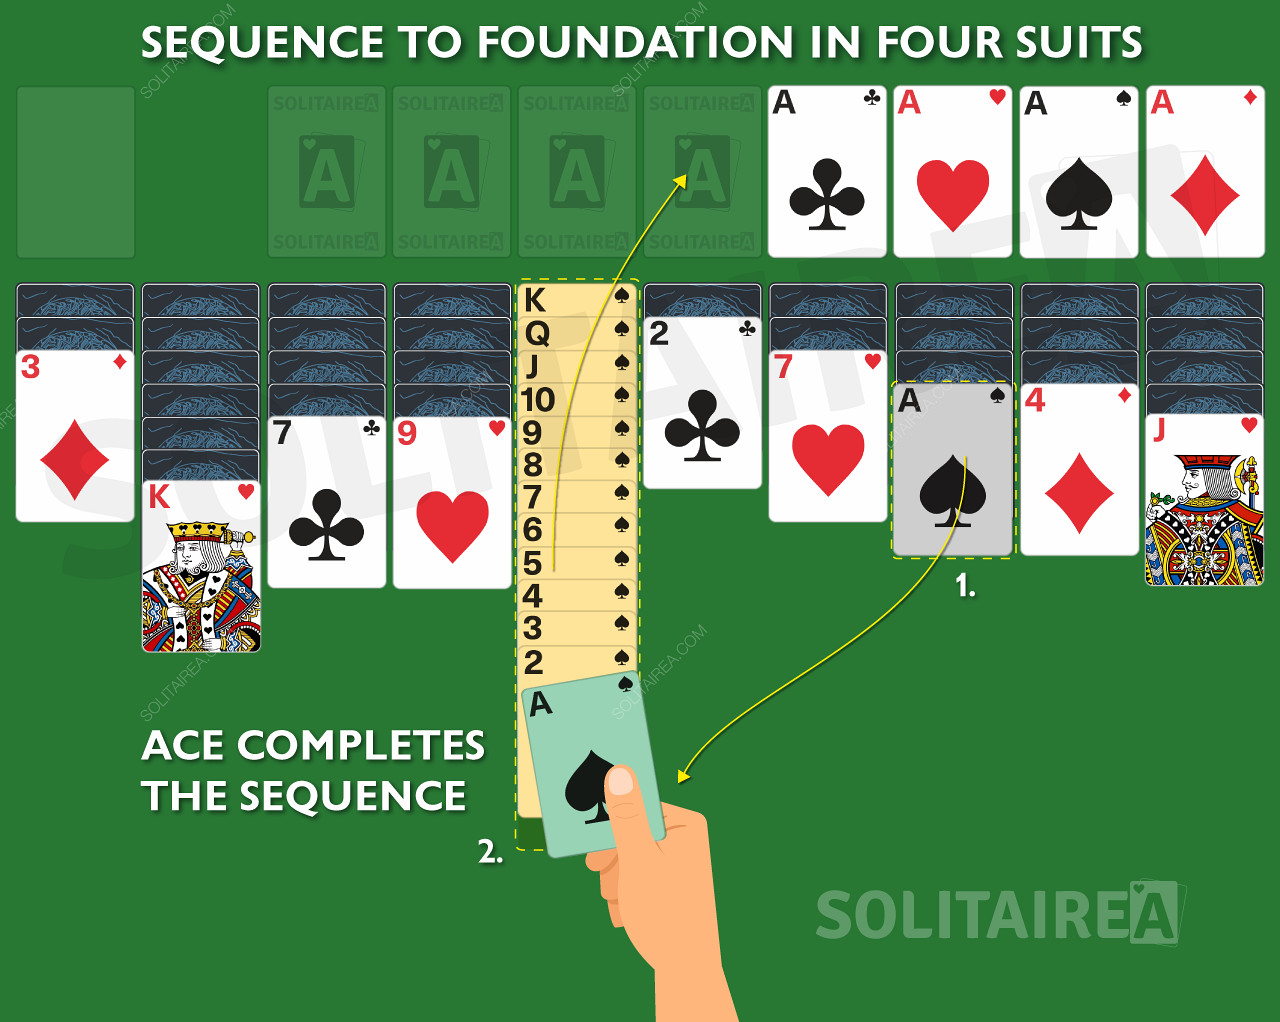 El As completa la secuencia en el juego Spider Solitaire 4 Suits